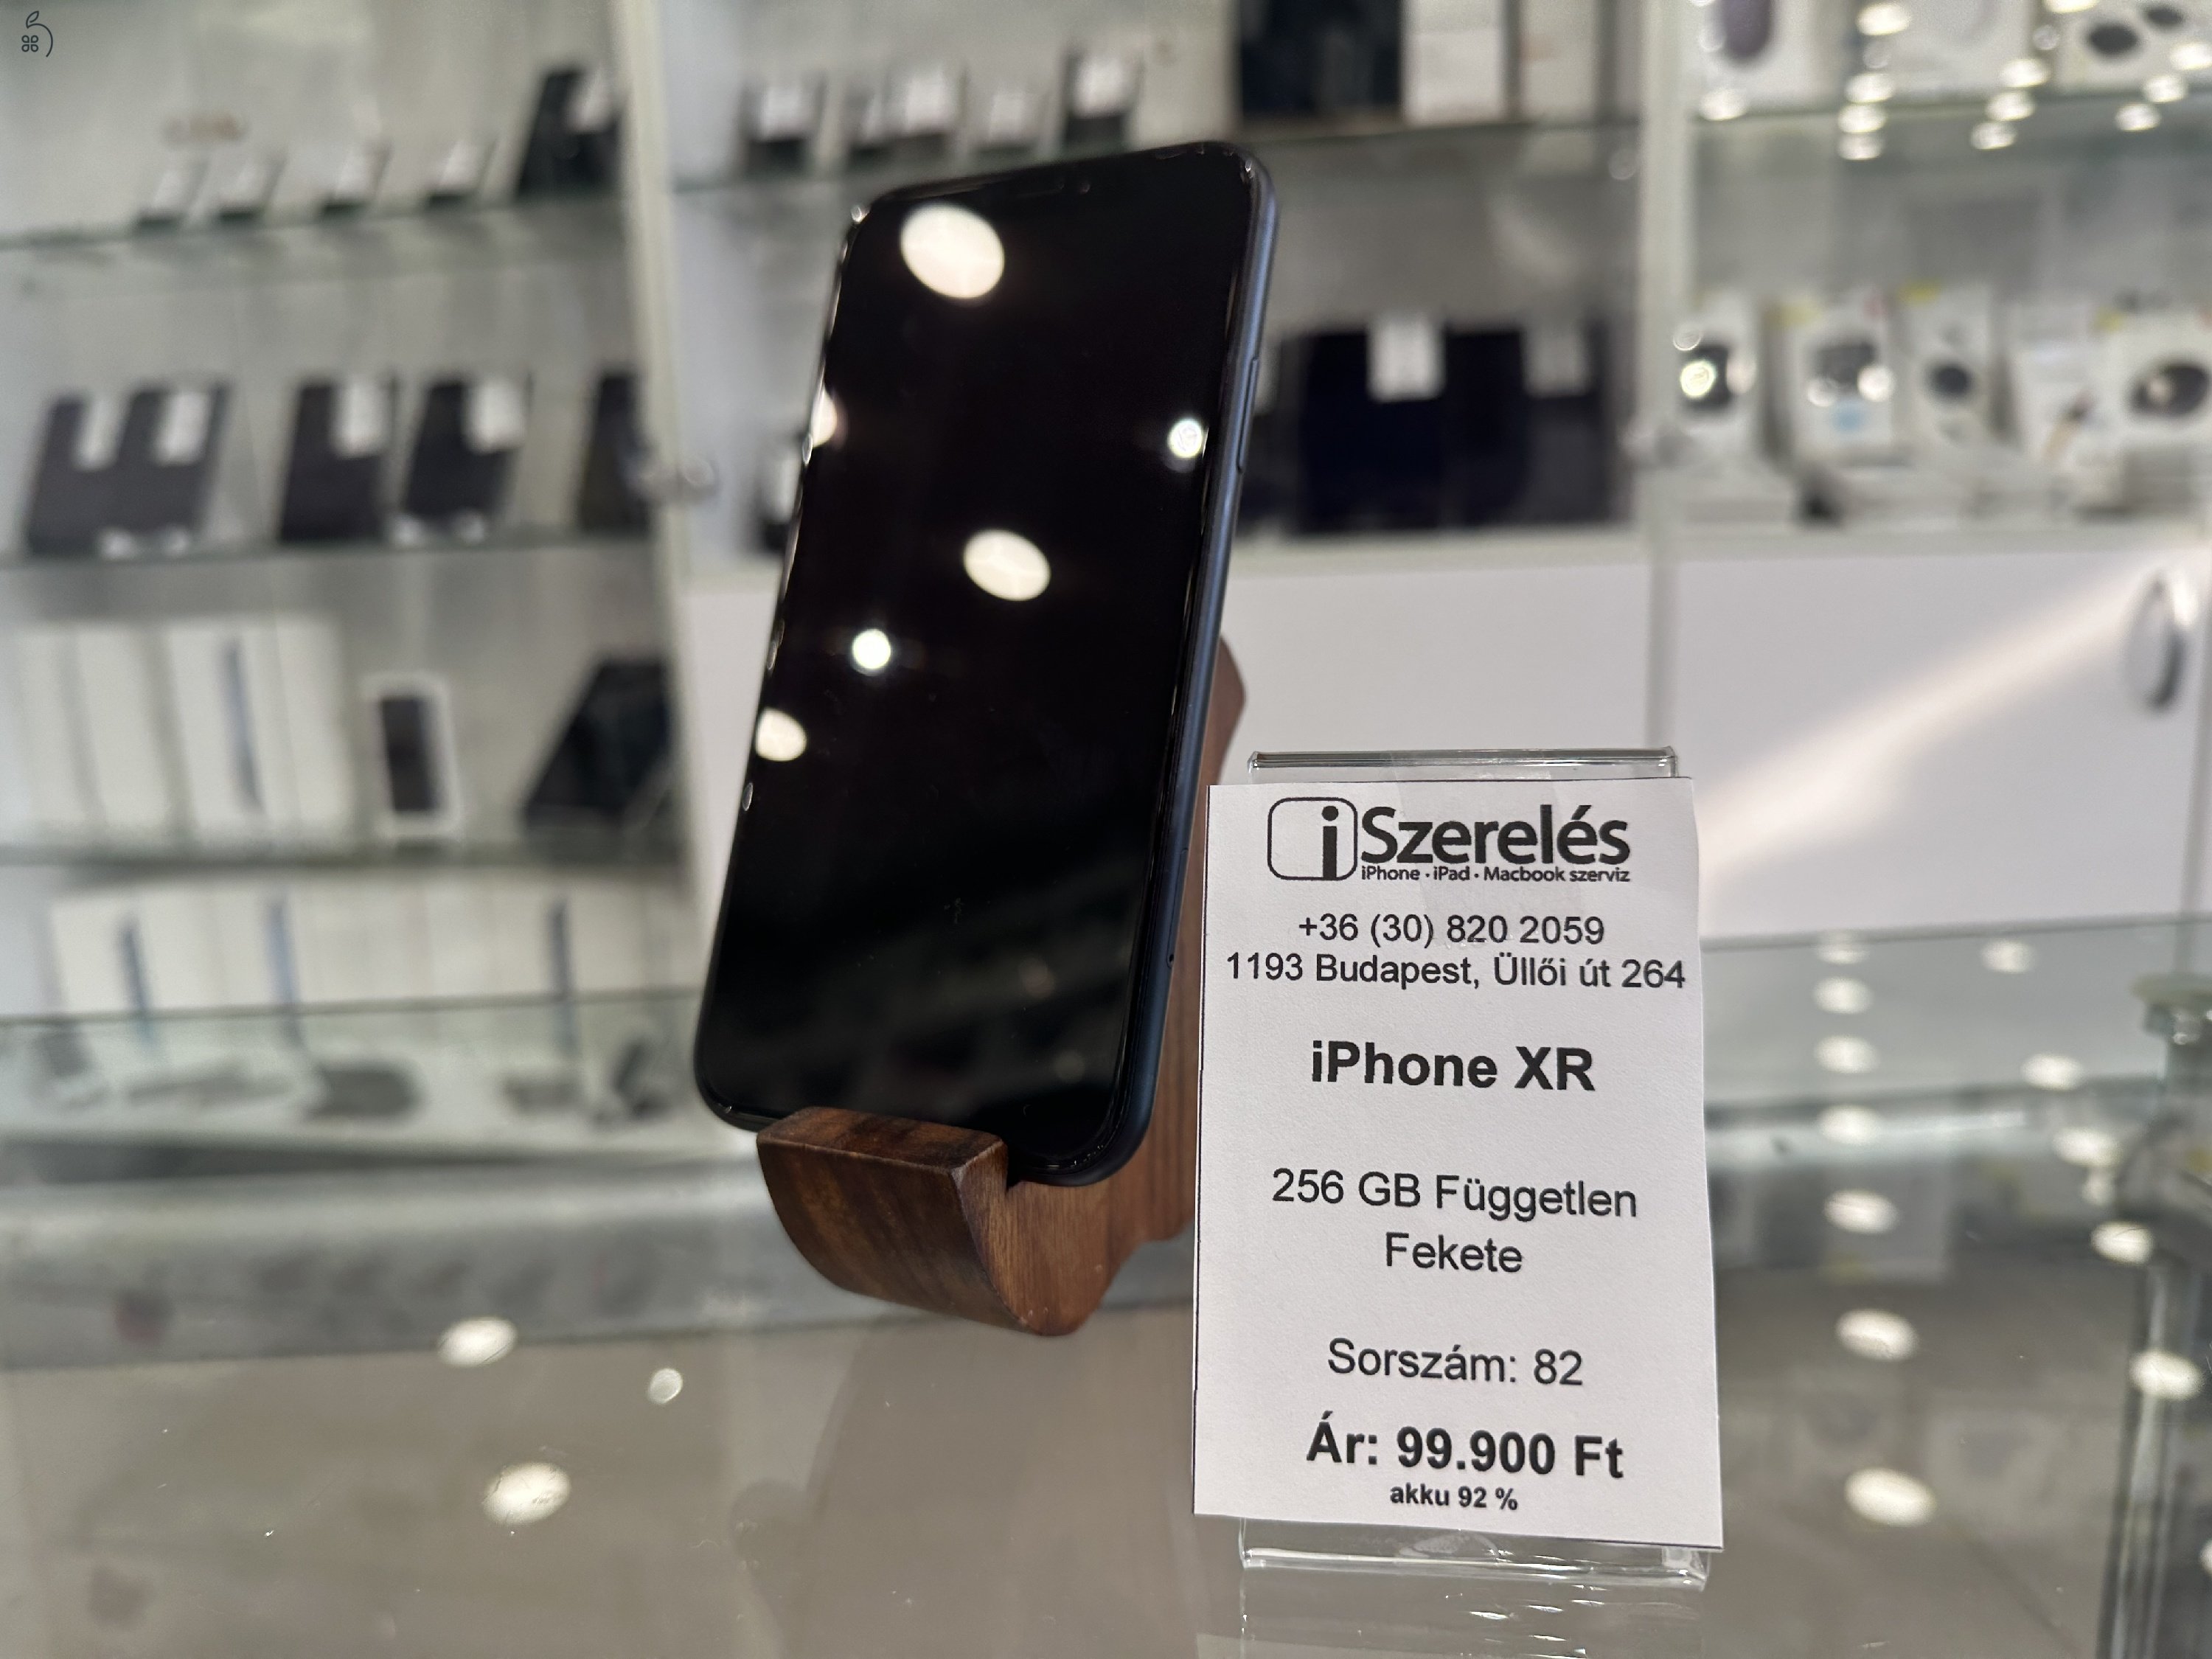 iPhone XR 256GB független fekete akku 92% garanciával (82) iSzerelés.hu